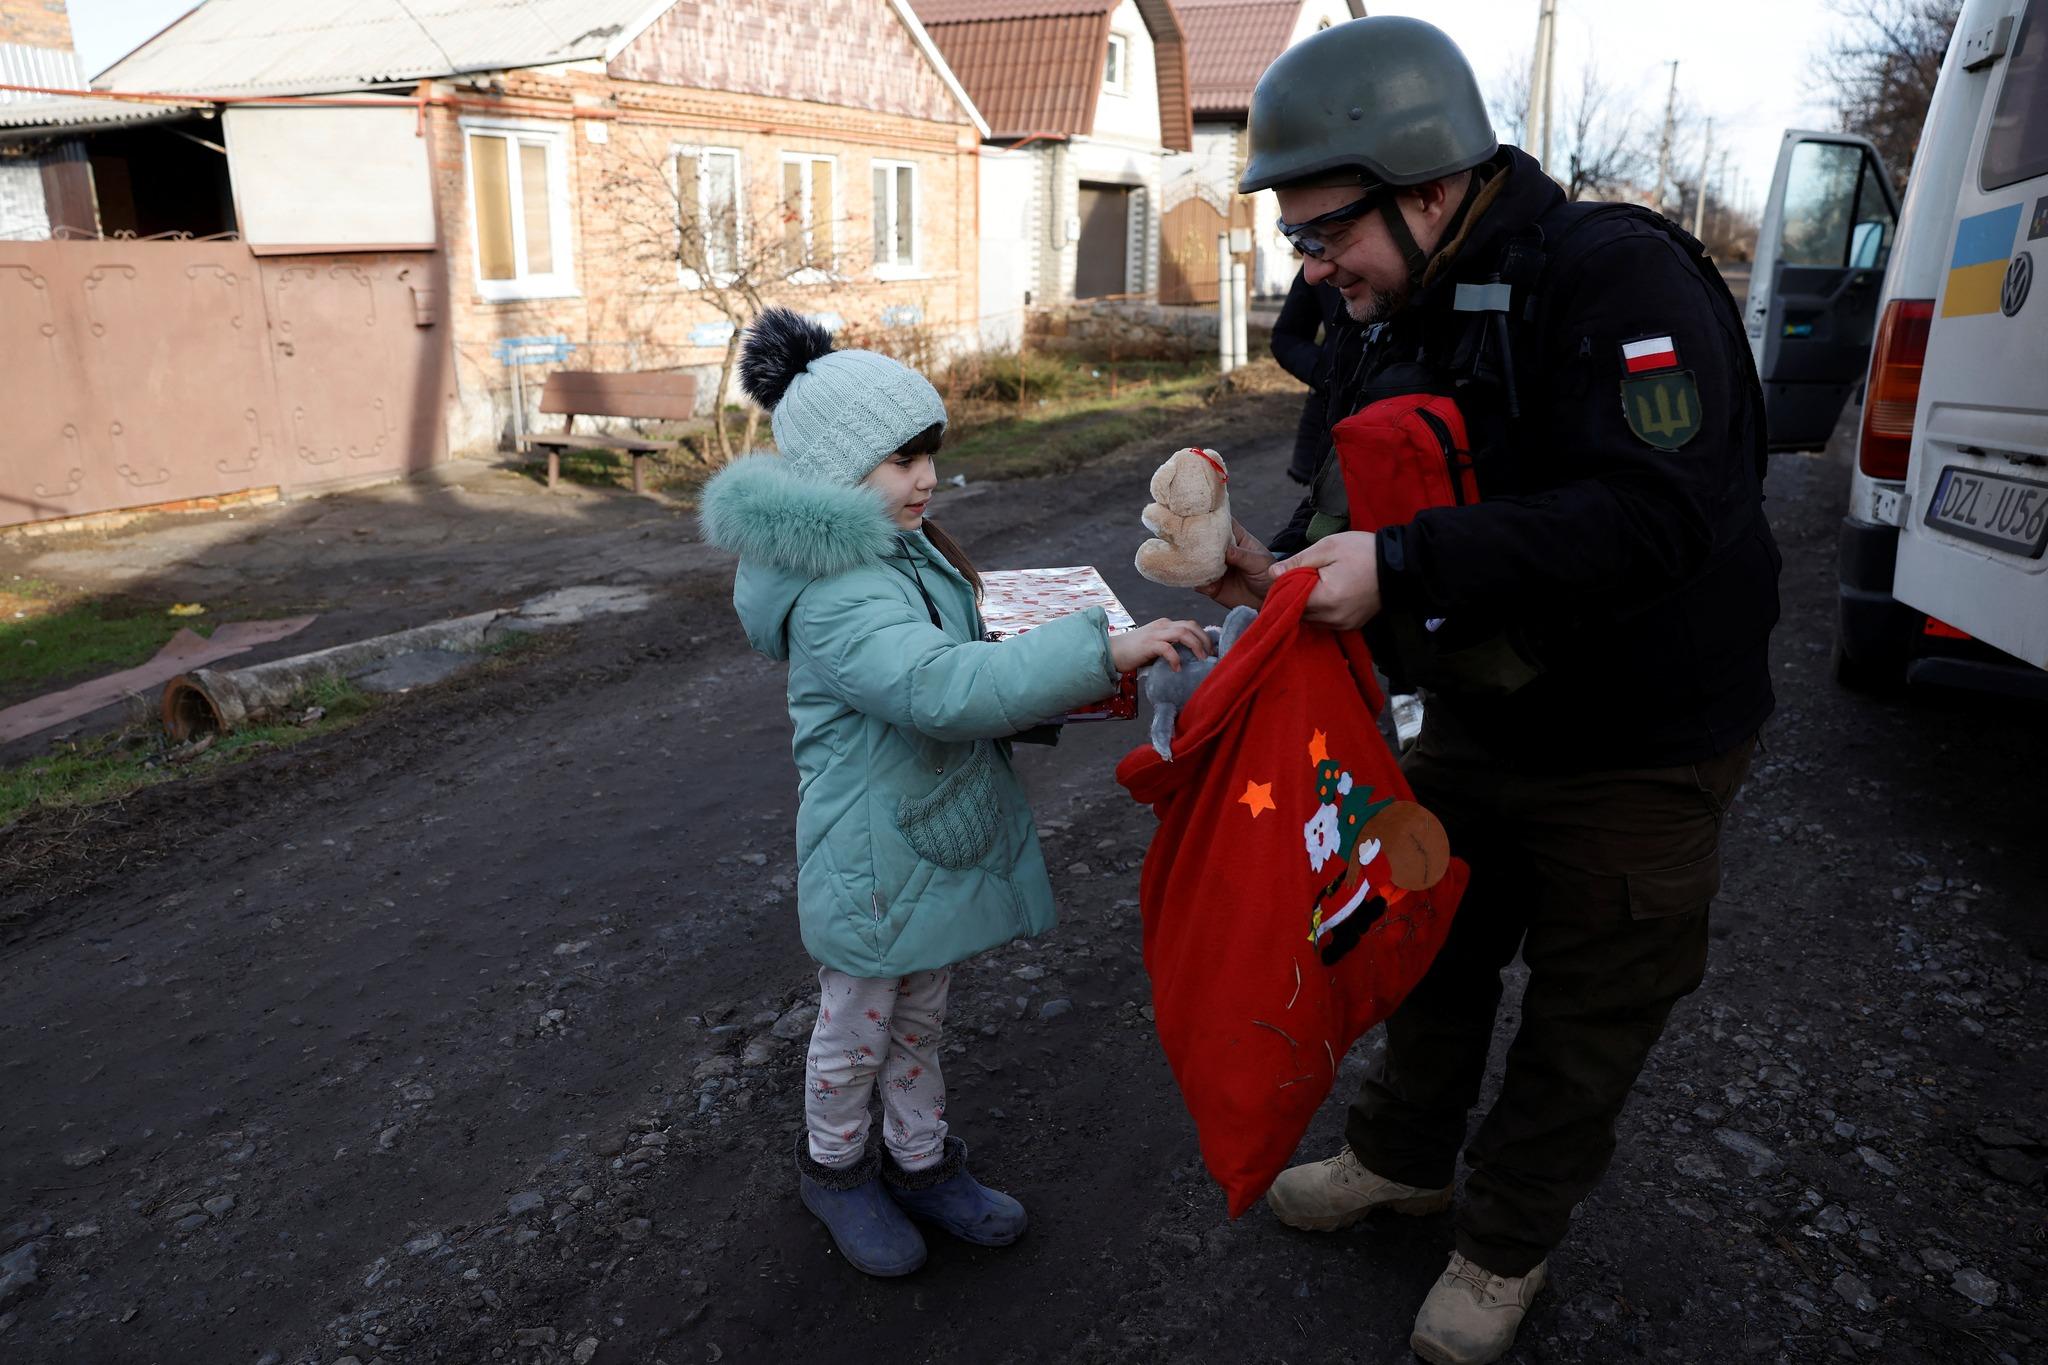 Božić u paklu: Volonter isporučuje poklone ukrajinskoj djeci